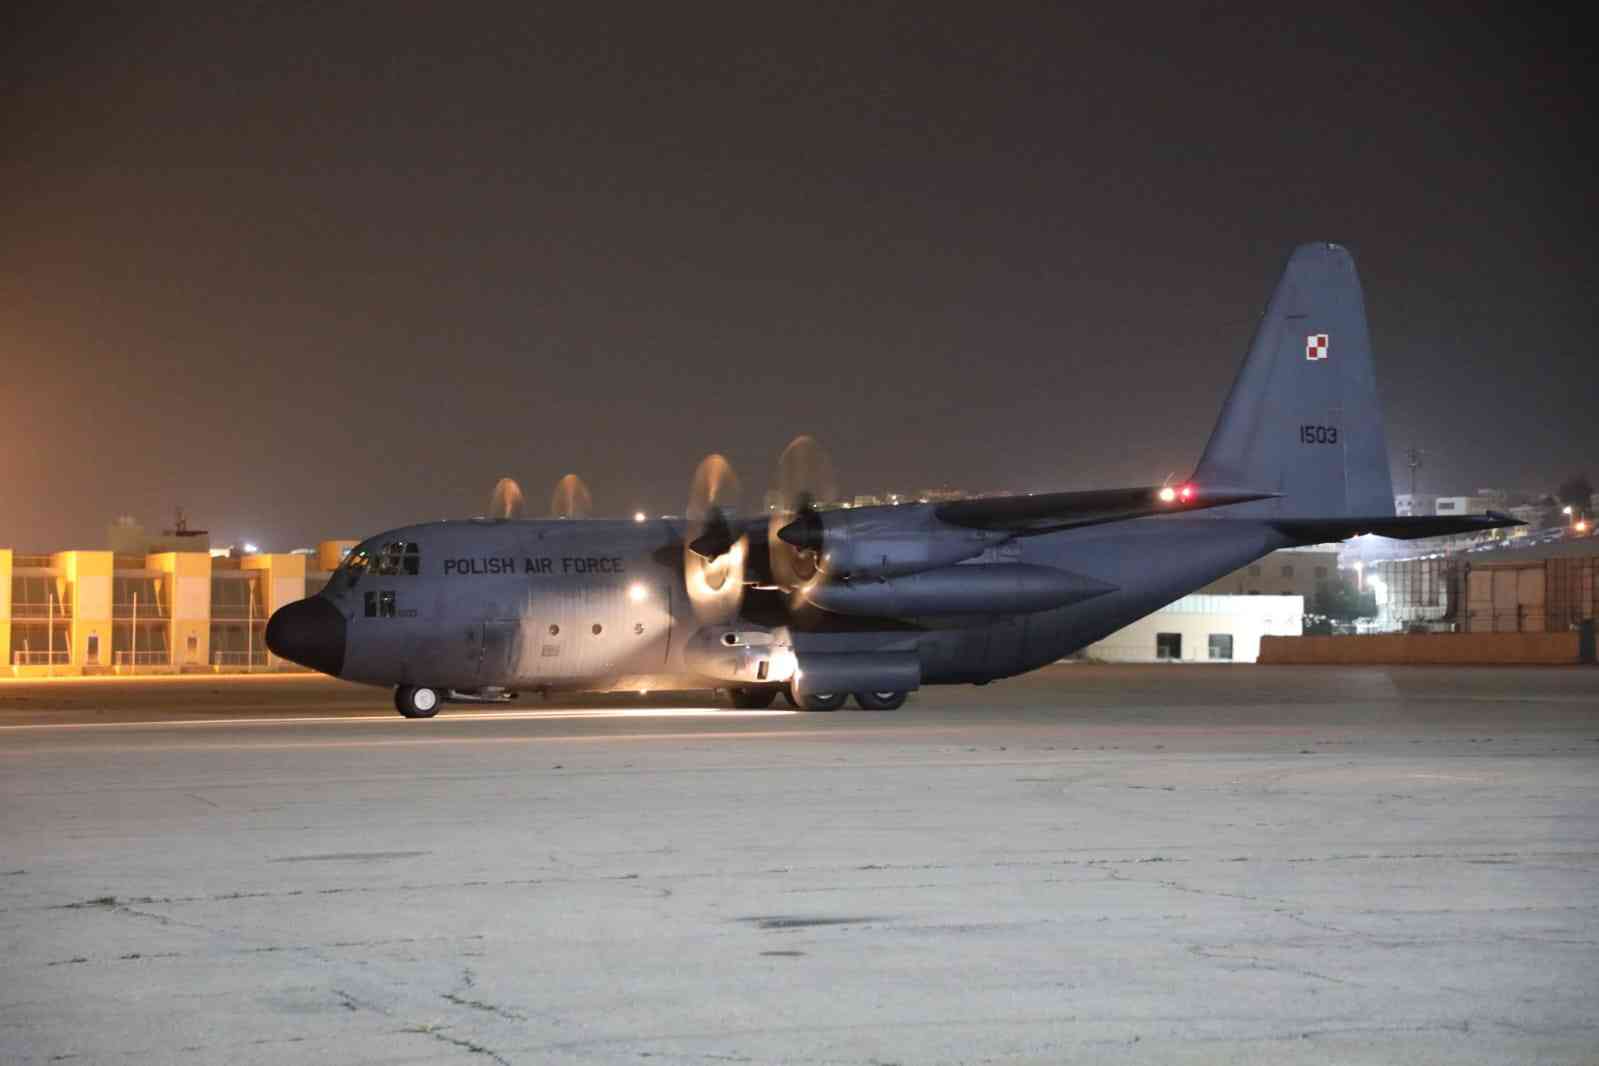 وصول طائرة مساعدات بولندية إلى مطار ماركا العسكري - صور